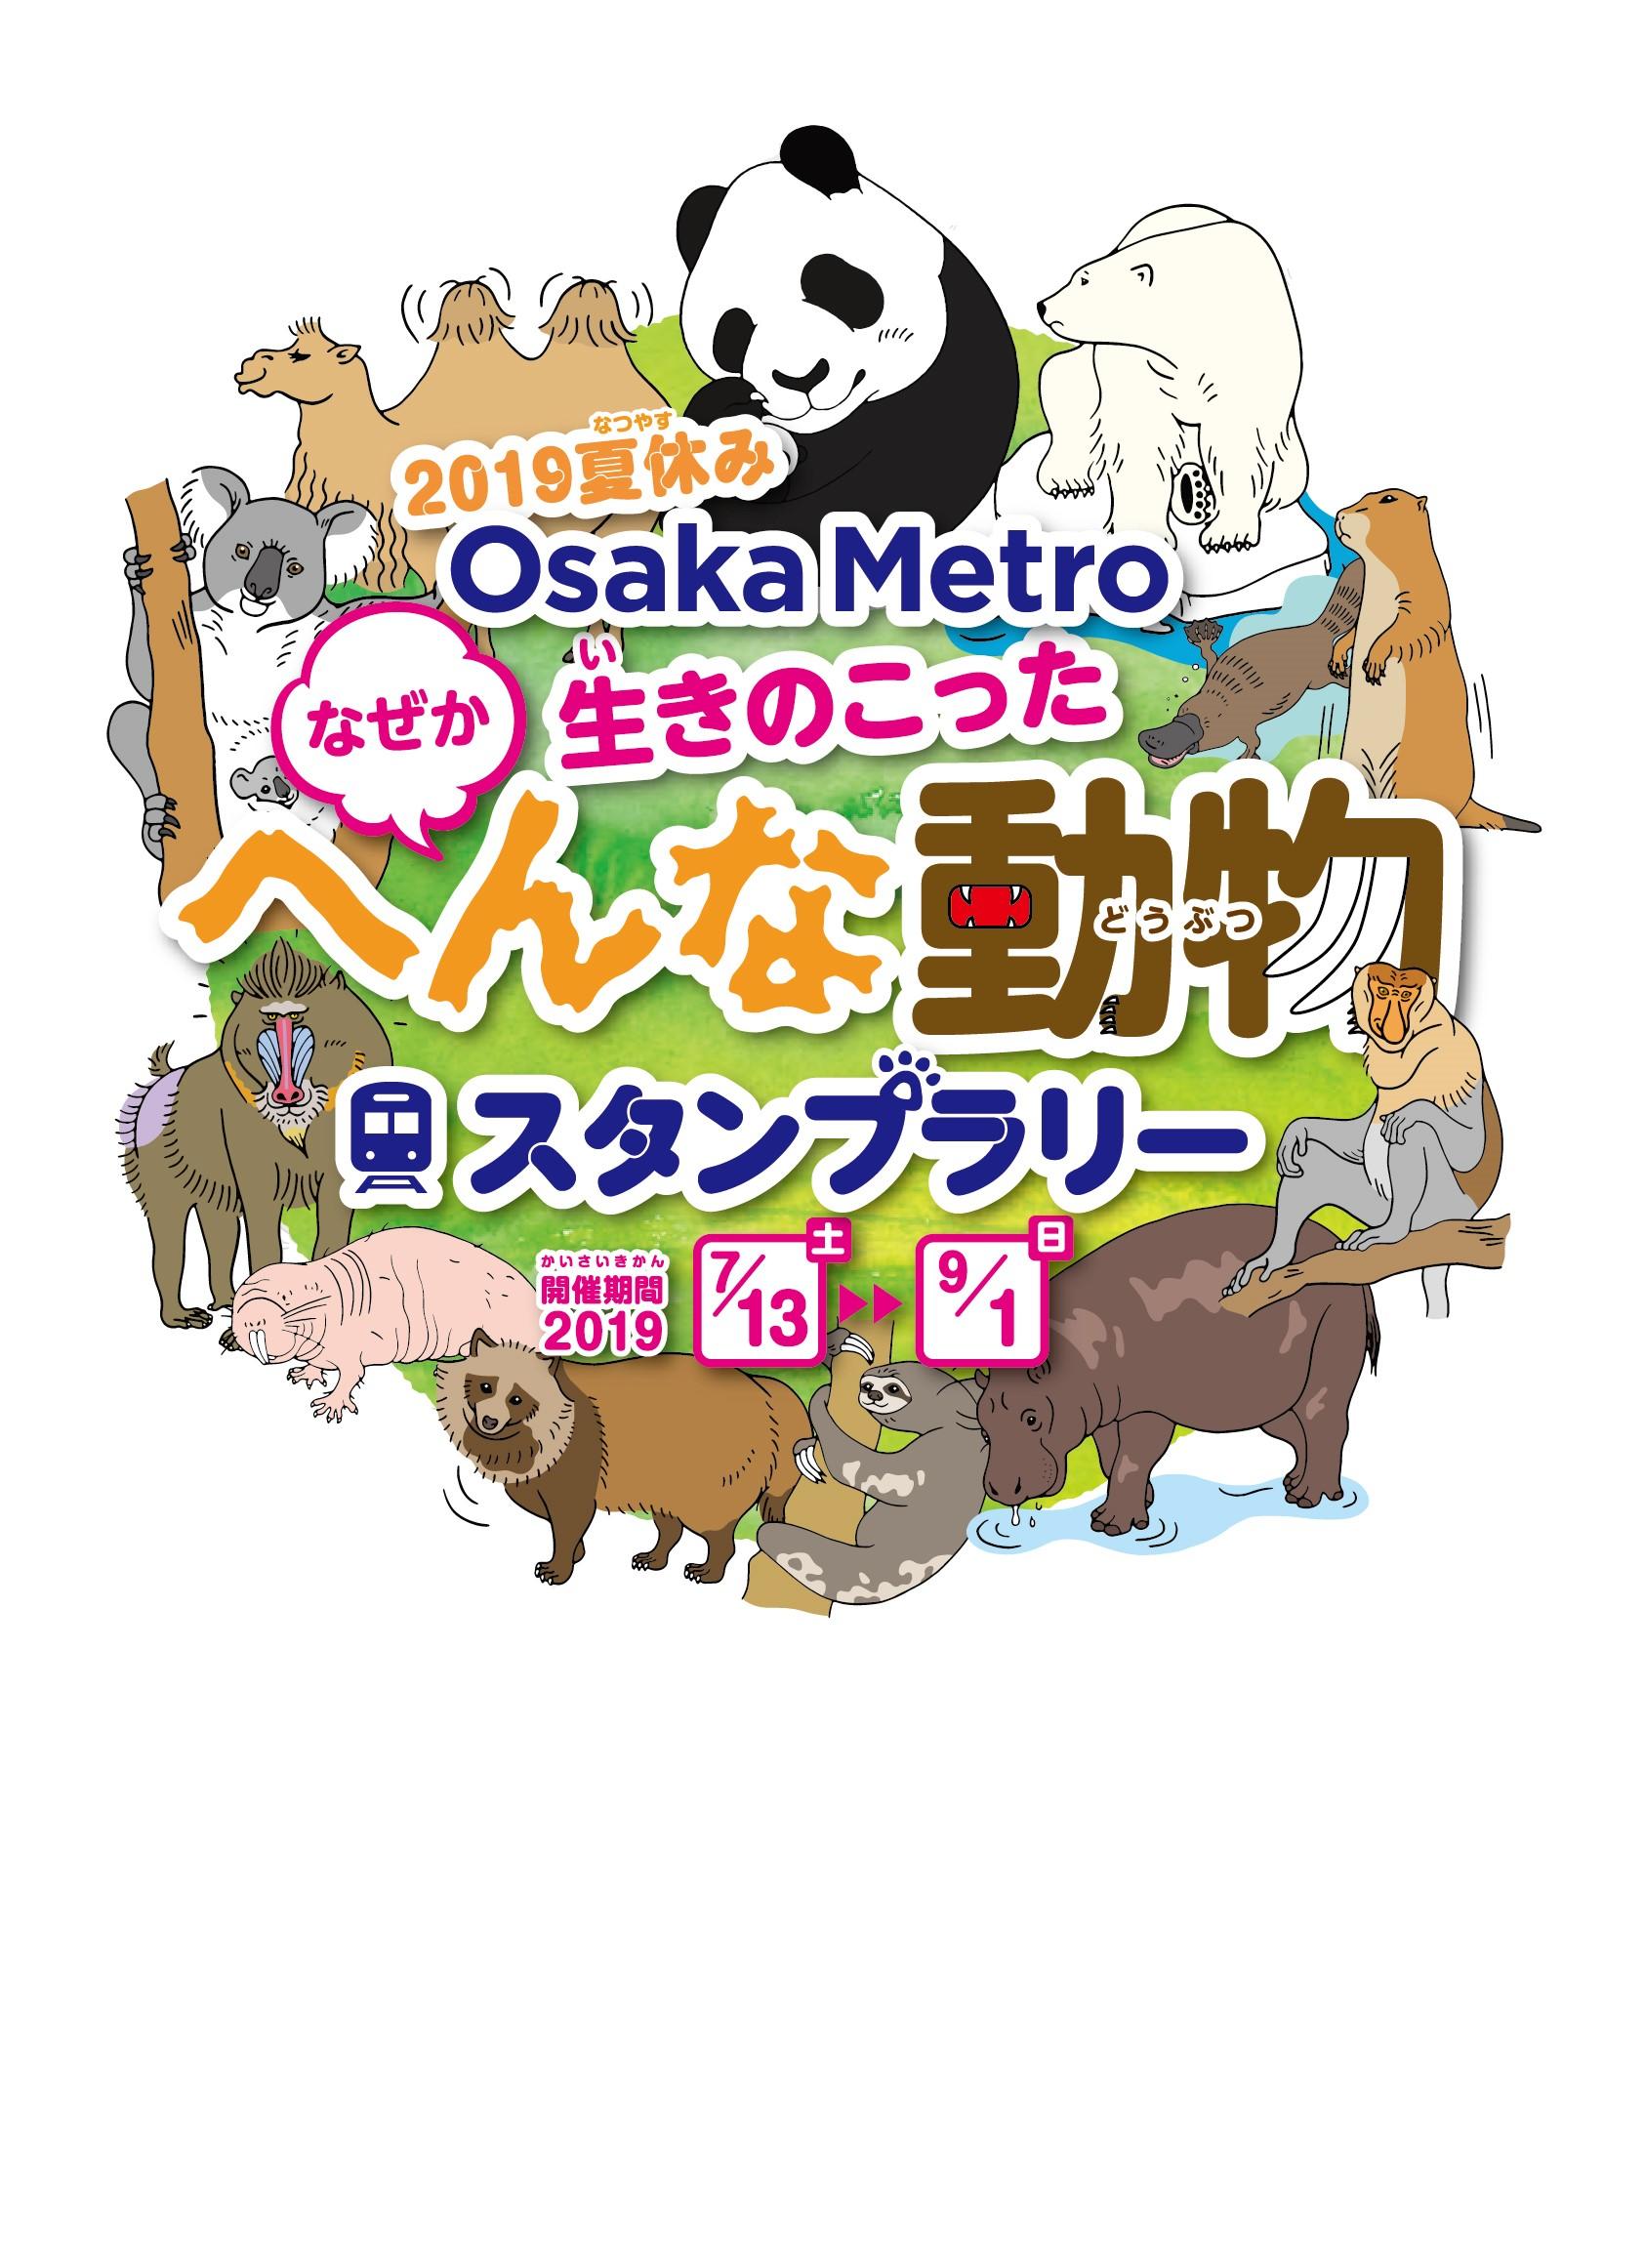 19夏休み Osaka Metro なぜか生きのこったへんな動物 スタンプラリーを実施します 動物スタンプを集めて へんな動物博士 になろう Osaka Metro